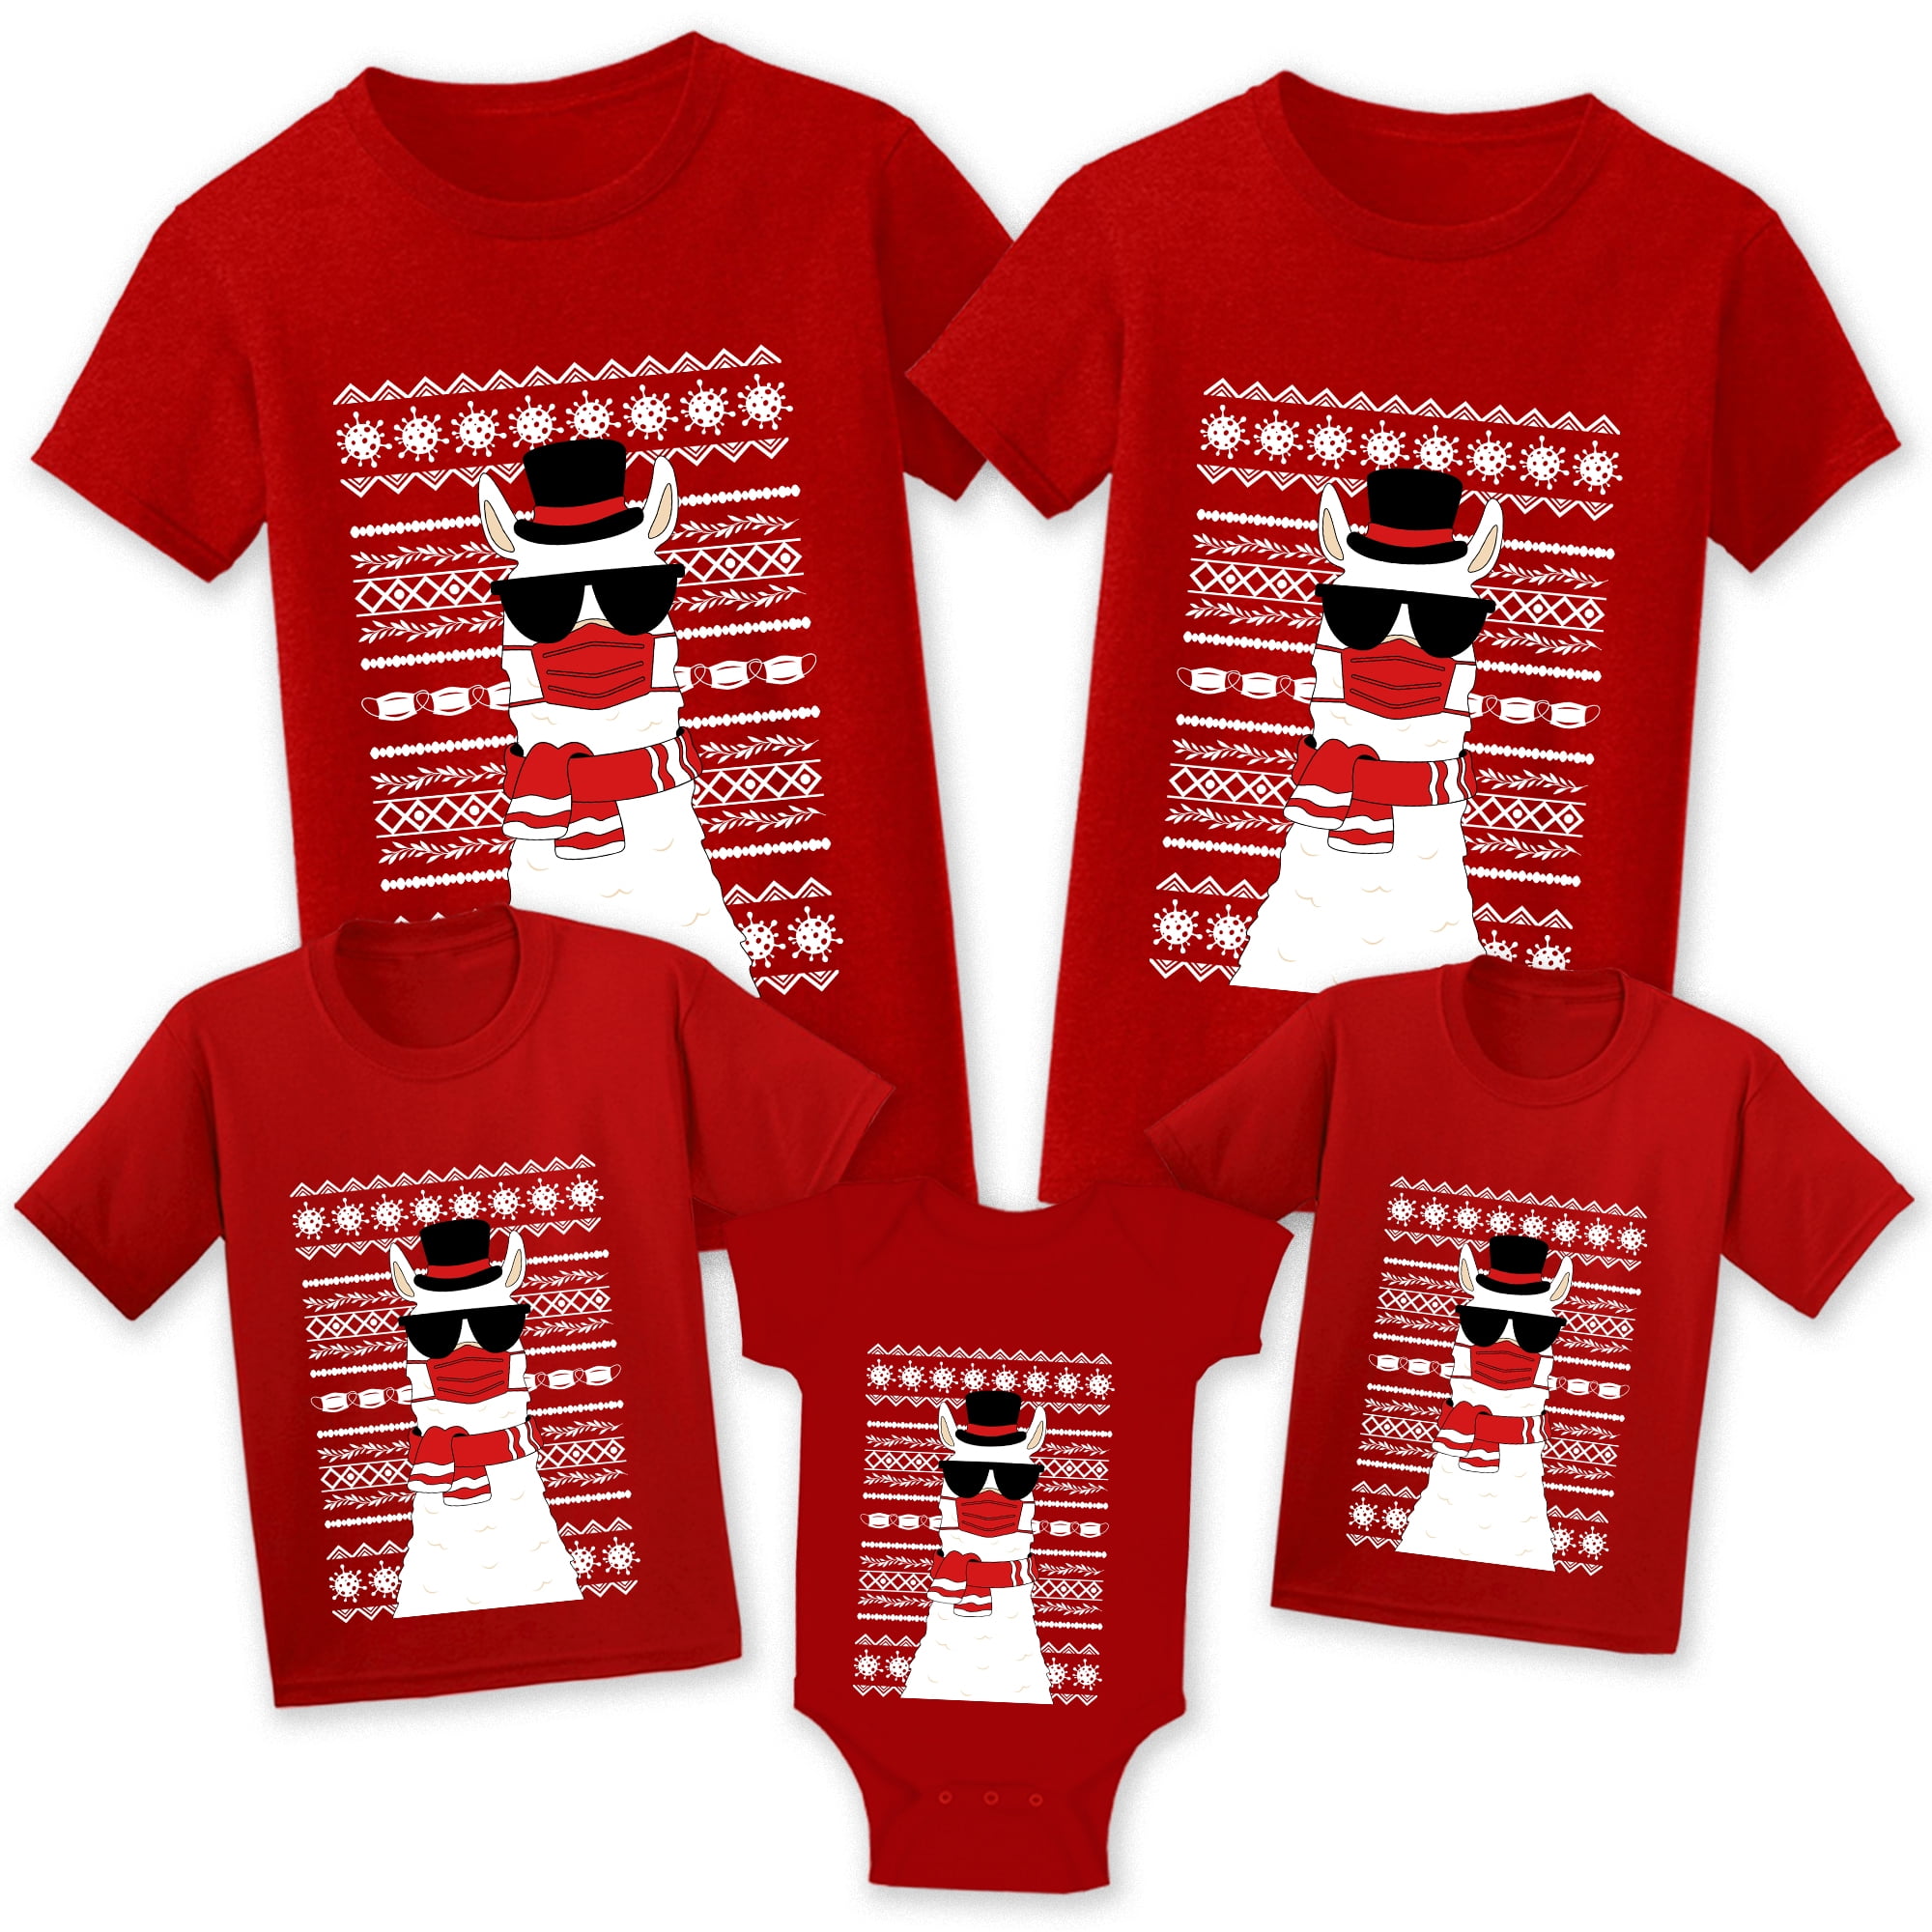 Christmas Matching Shirt Christmas Family Shirt Holiday Shirt. Merry Christmas Shirt Christmas Gift Shirt